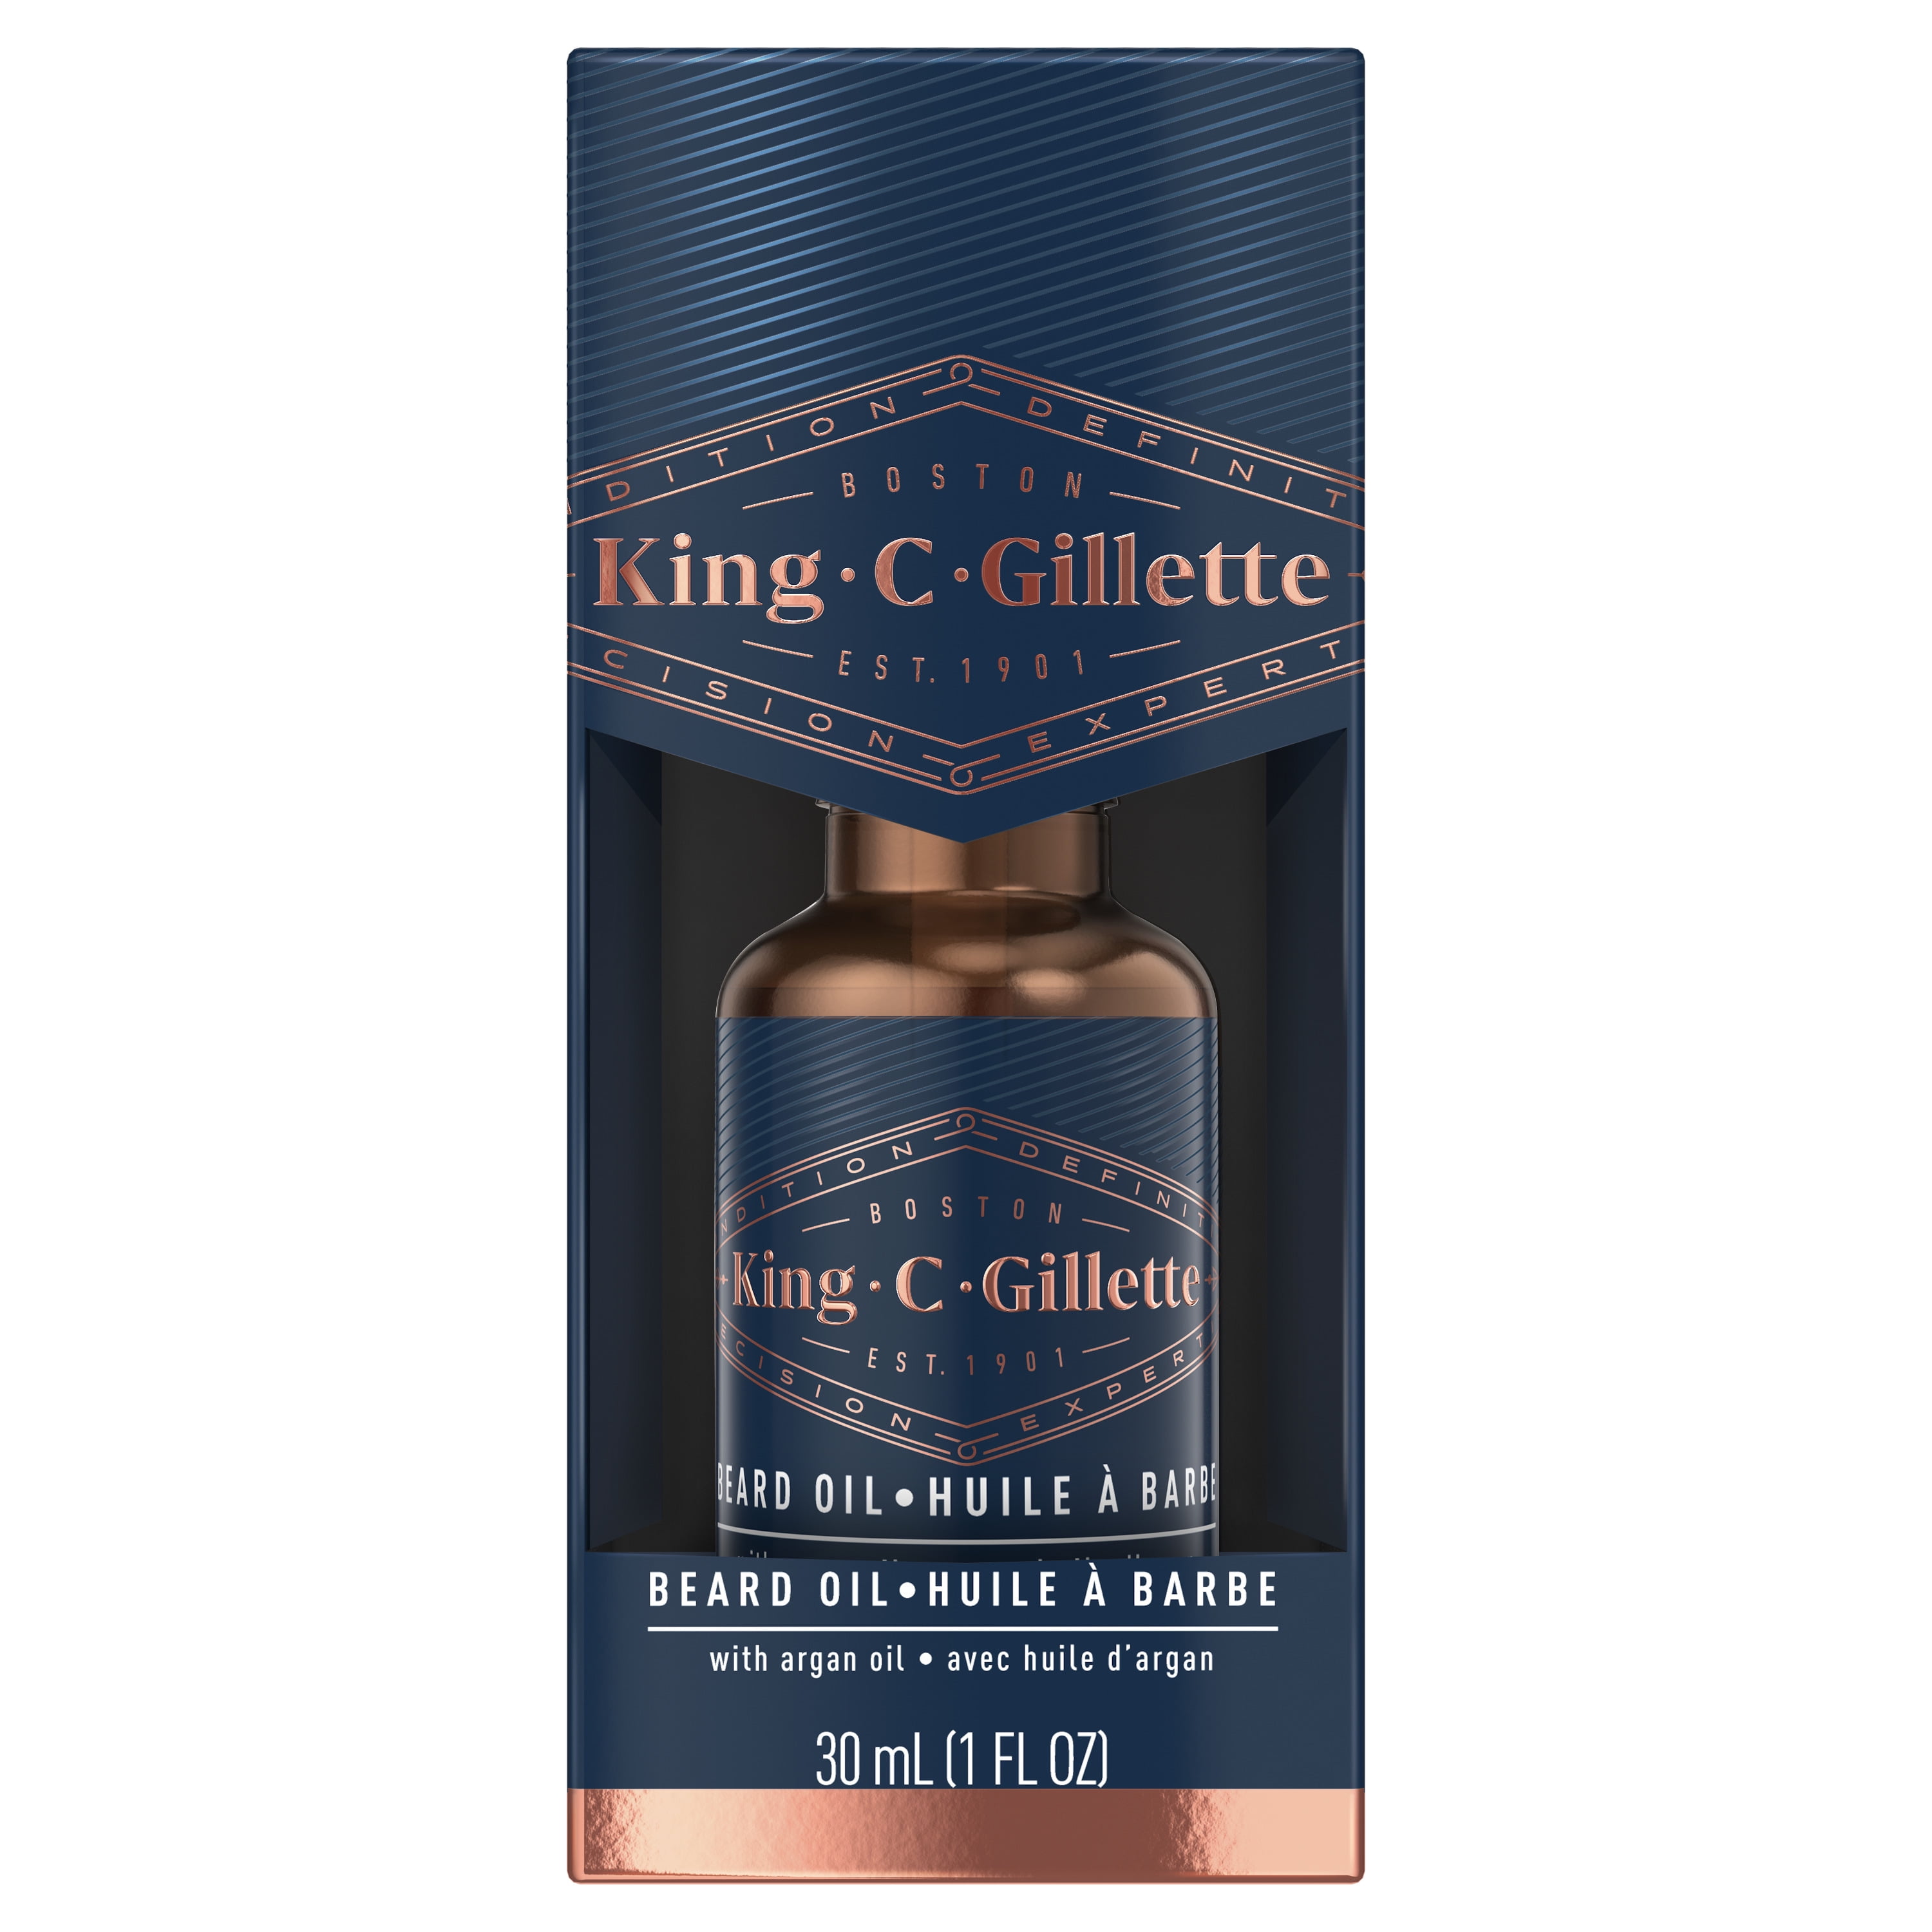 generøsitet Hysterisk Slid King C. Gillette Men's Beard Oil, 1 oz - Walmart.com